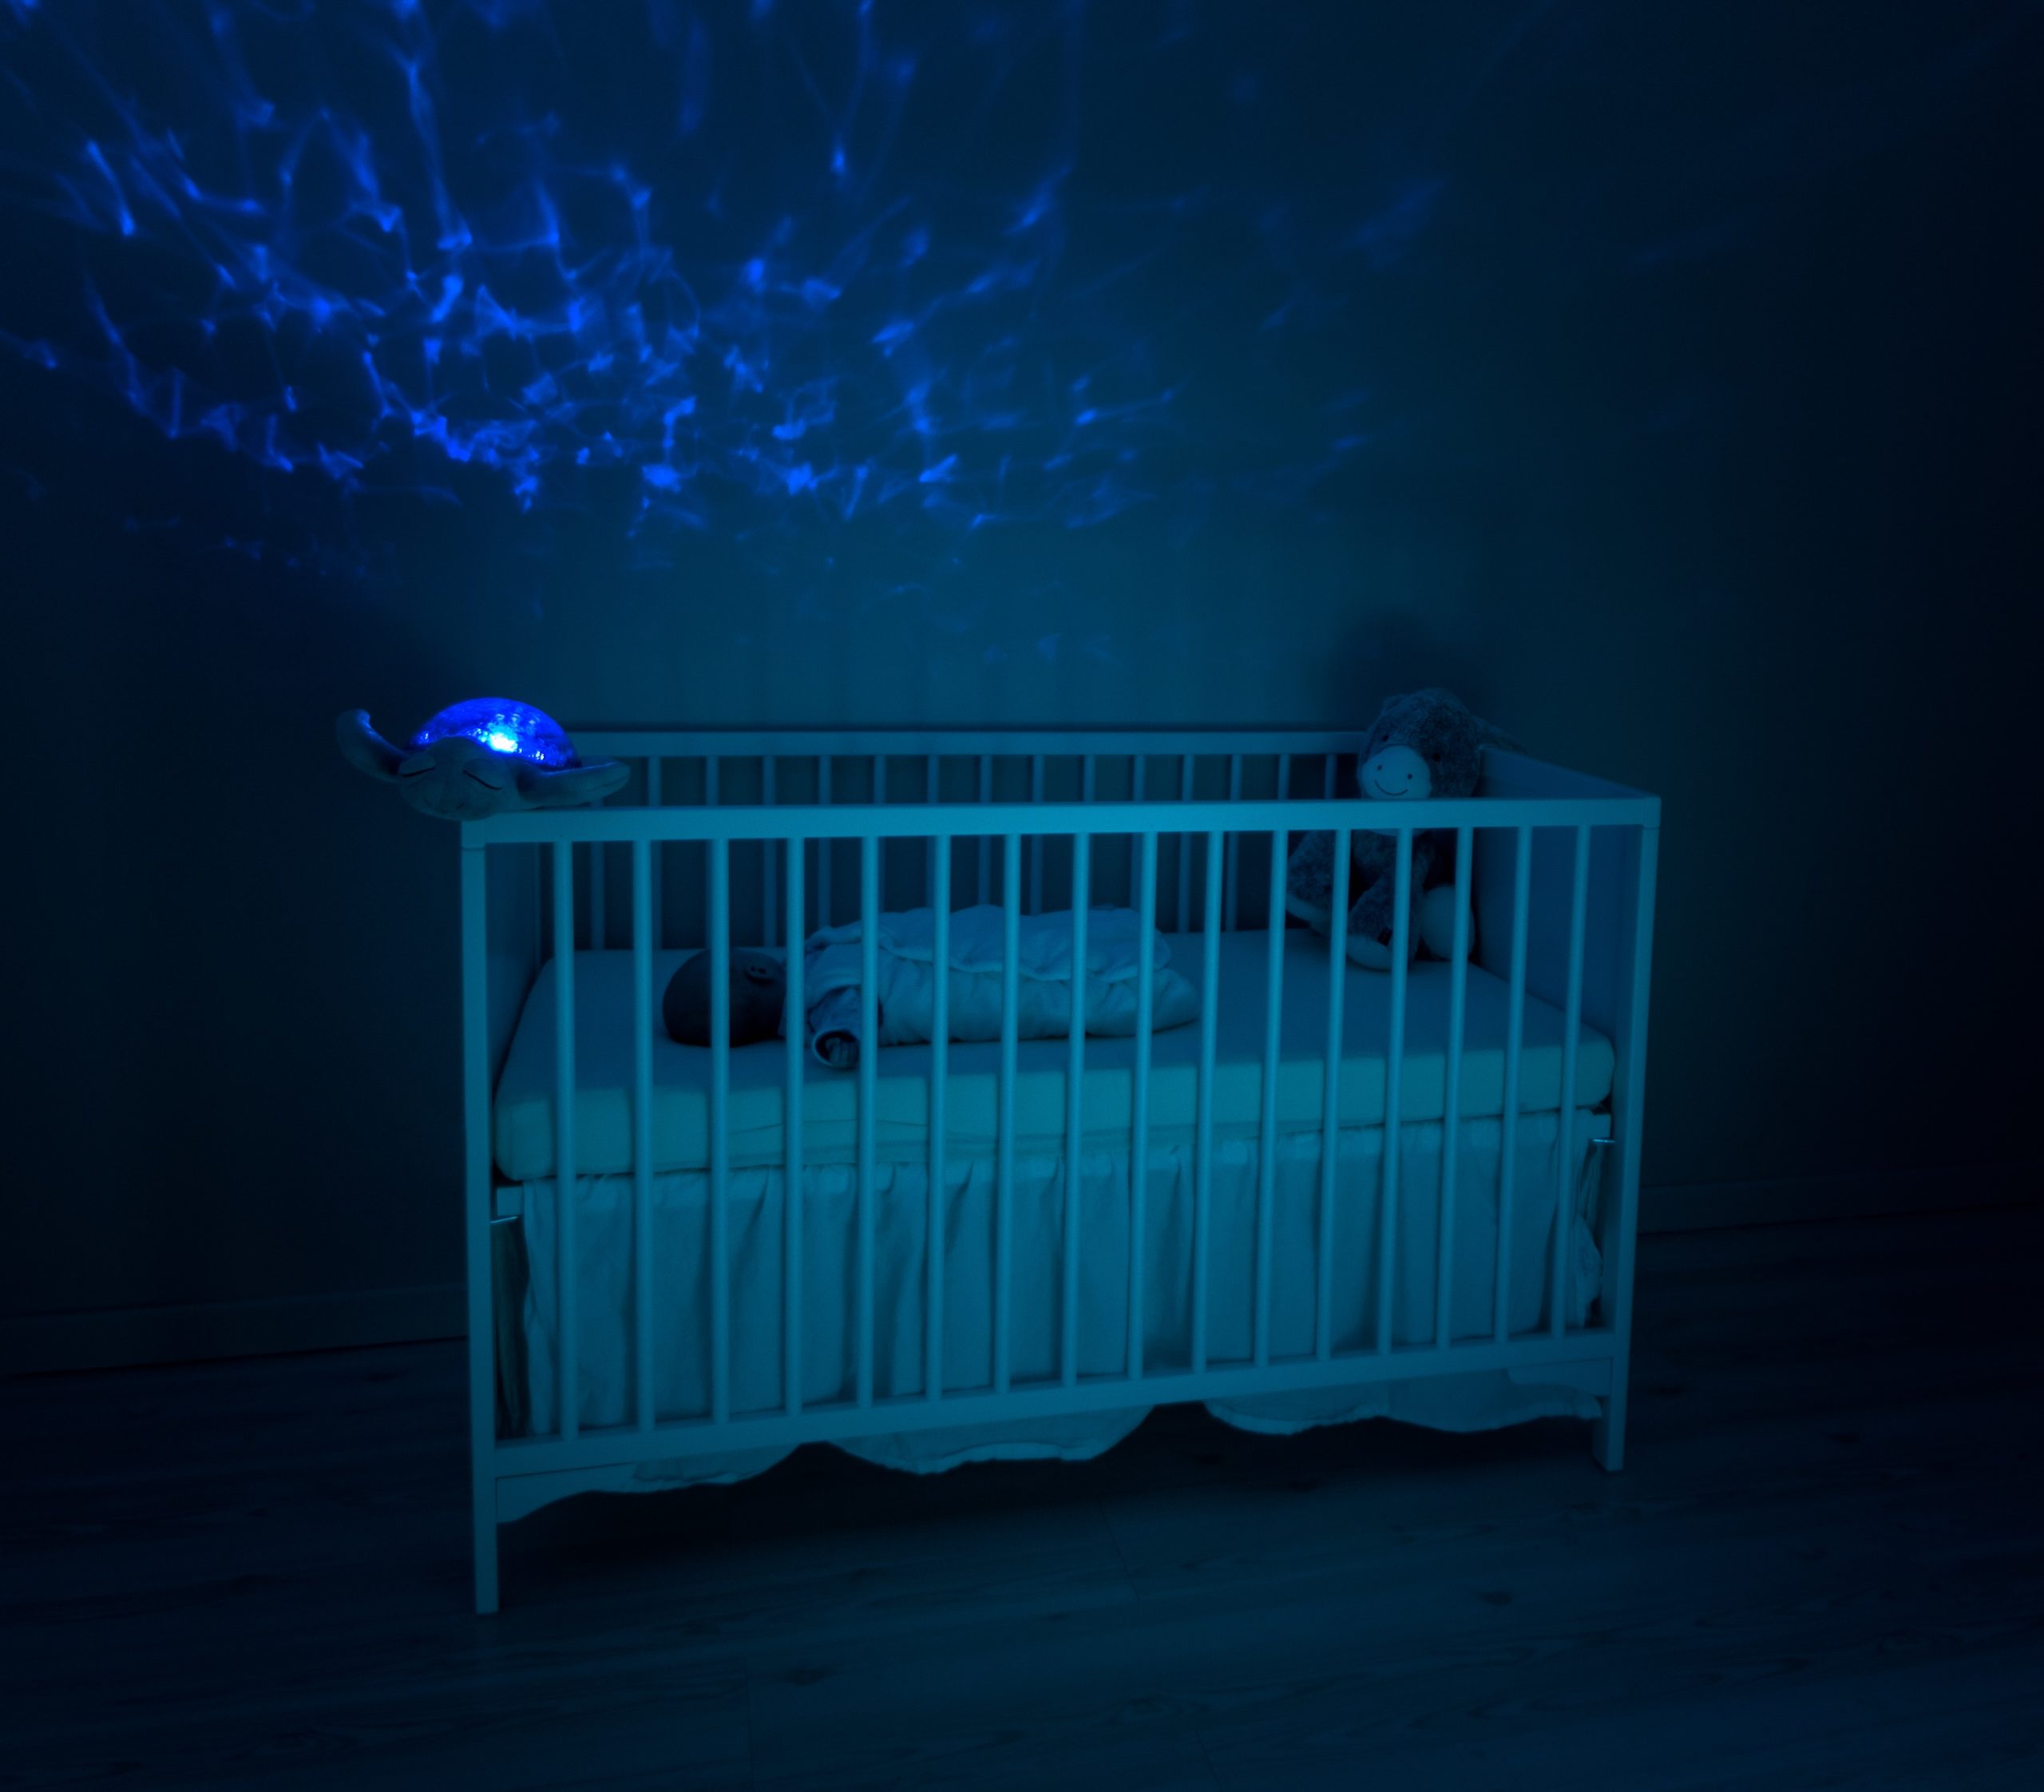 Baby in crib at night (via Unsplash)